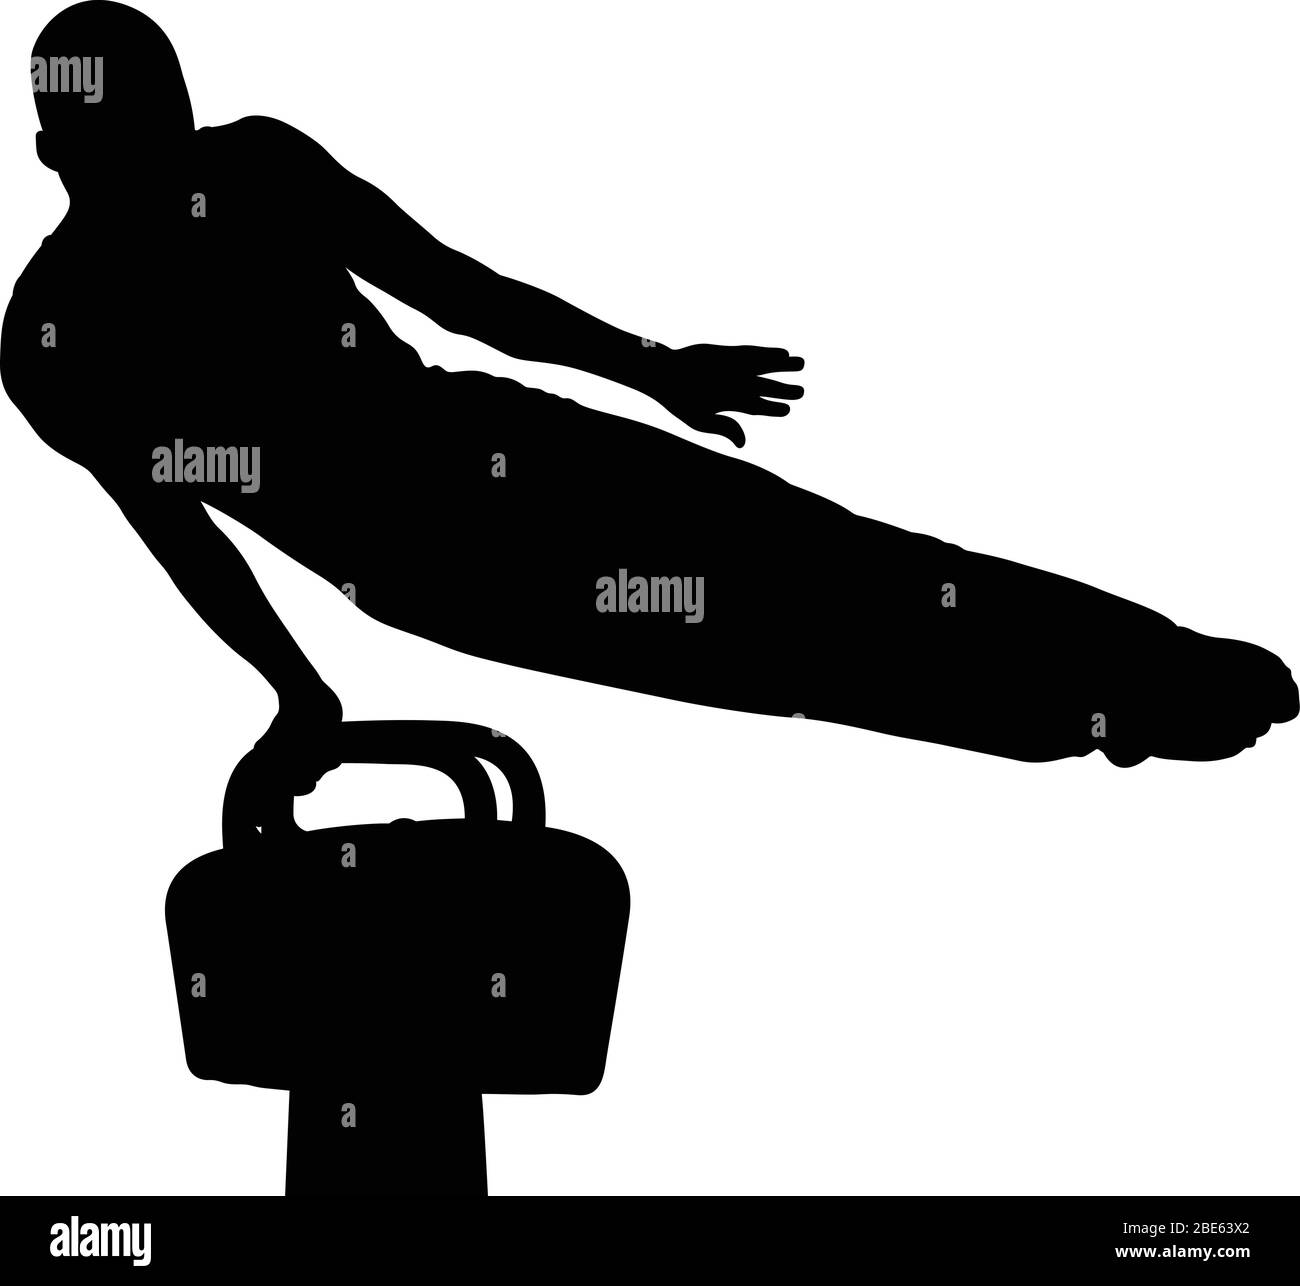 exercice de gymnastique d'athlète sur le cheval de pommel. silhouette noire isolée Illustration de Vecteur